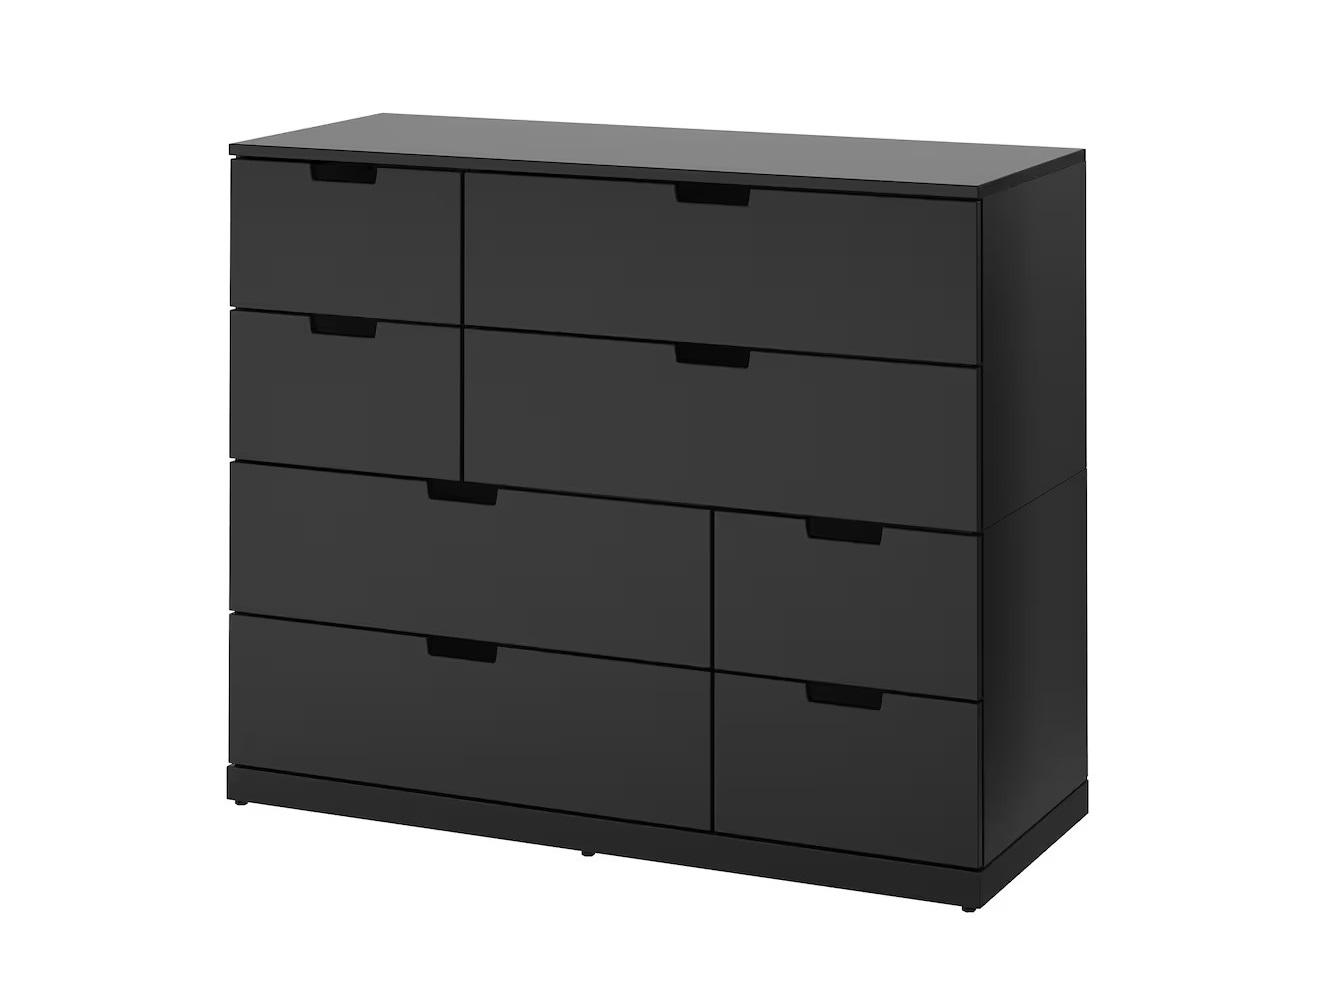 Комод Нордли 29 black ИКЕА (IKEA) изображение товара